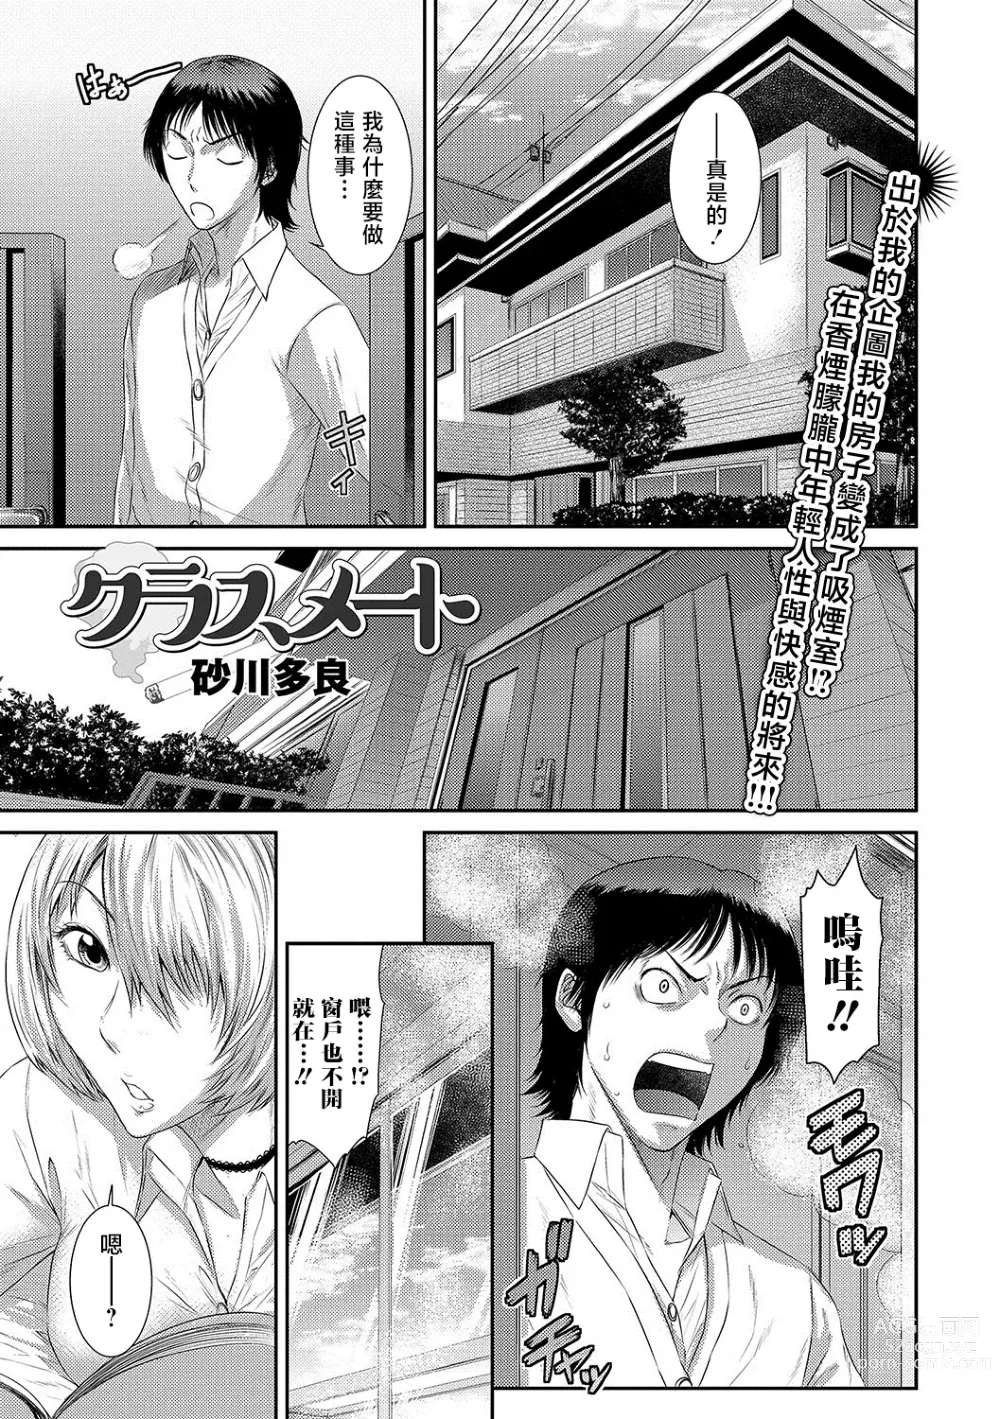 Page 1 of manga Classmate